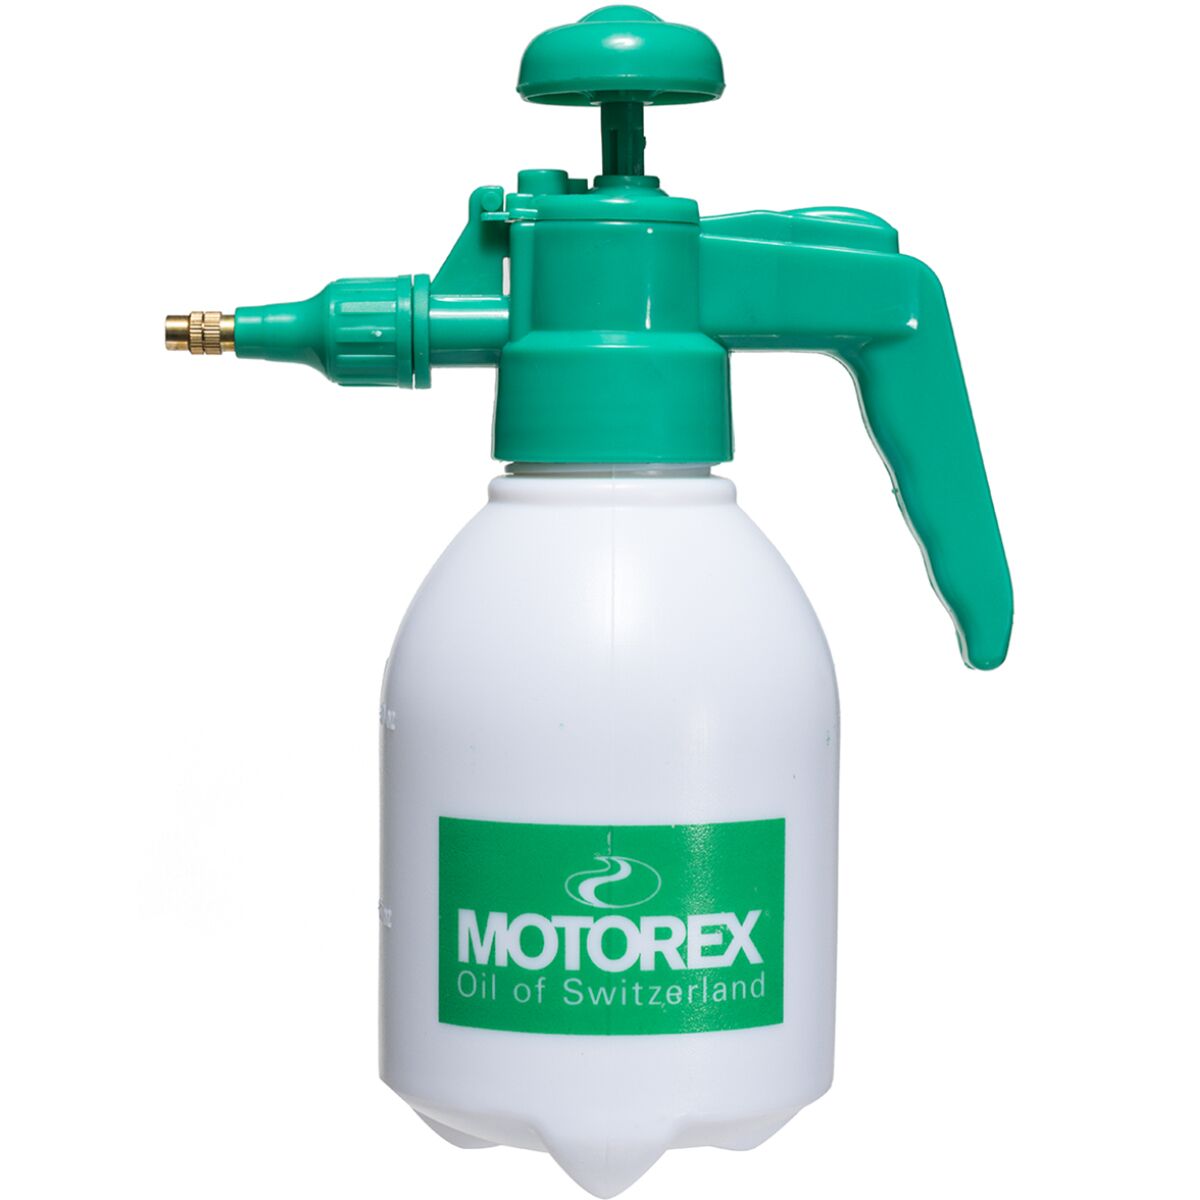 Motorex Pressure Spray Bottle